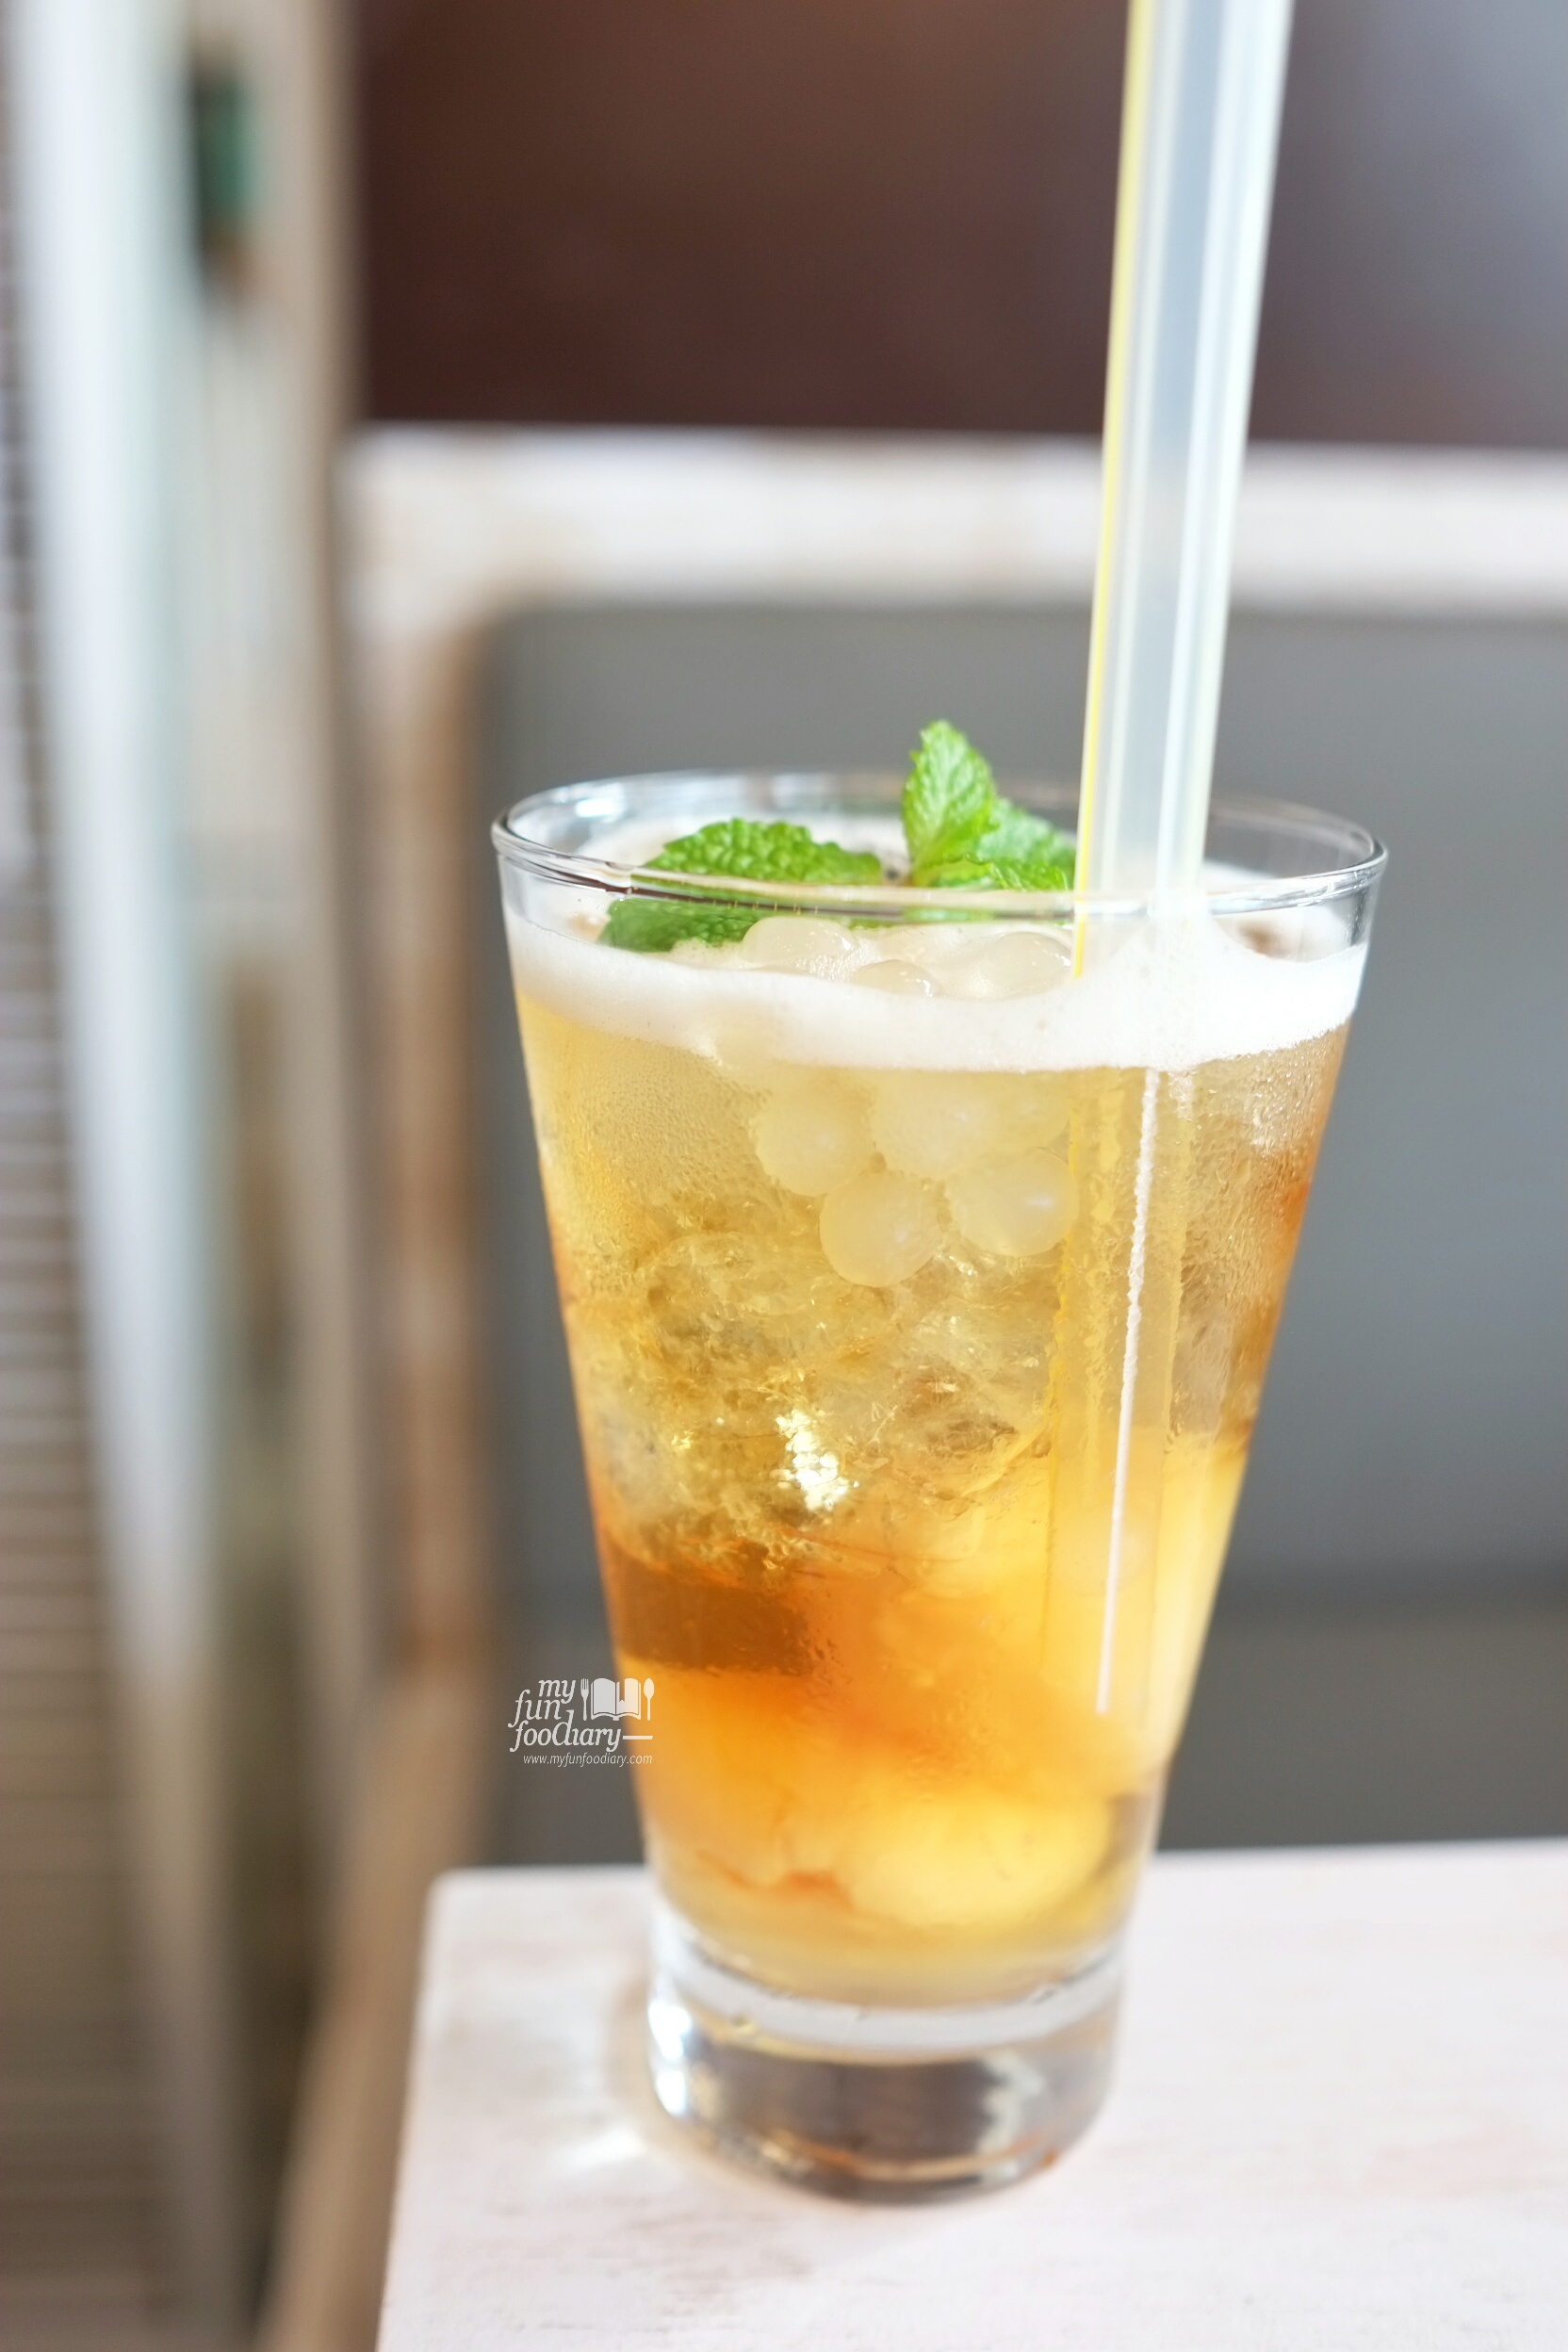 Ice Lychee Tea at Shirayuki PIK by Myfunfoodiary